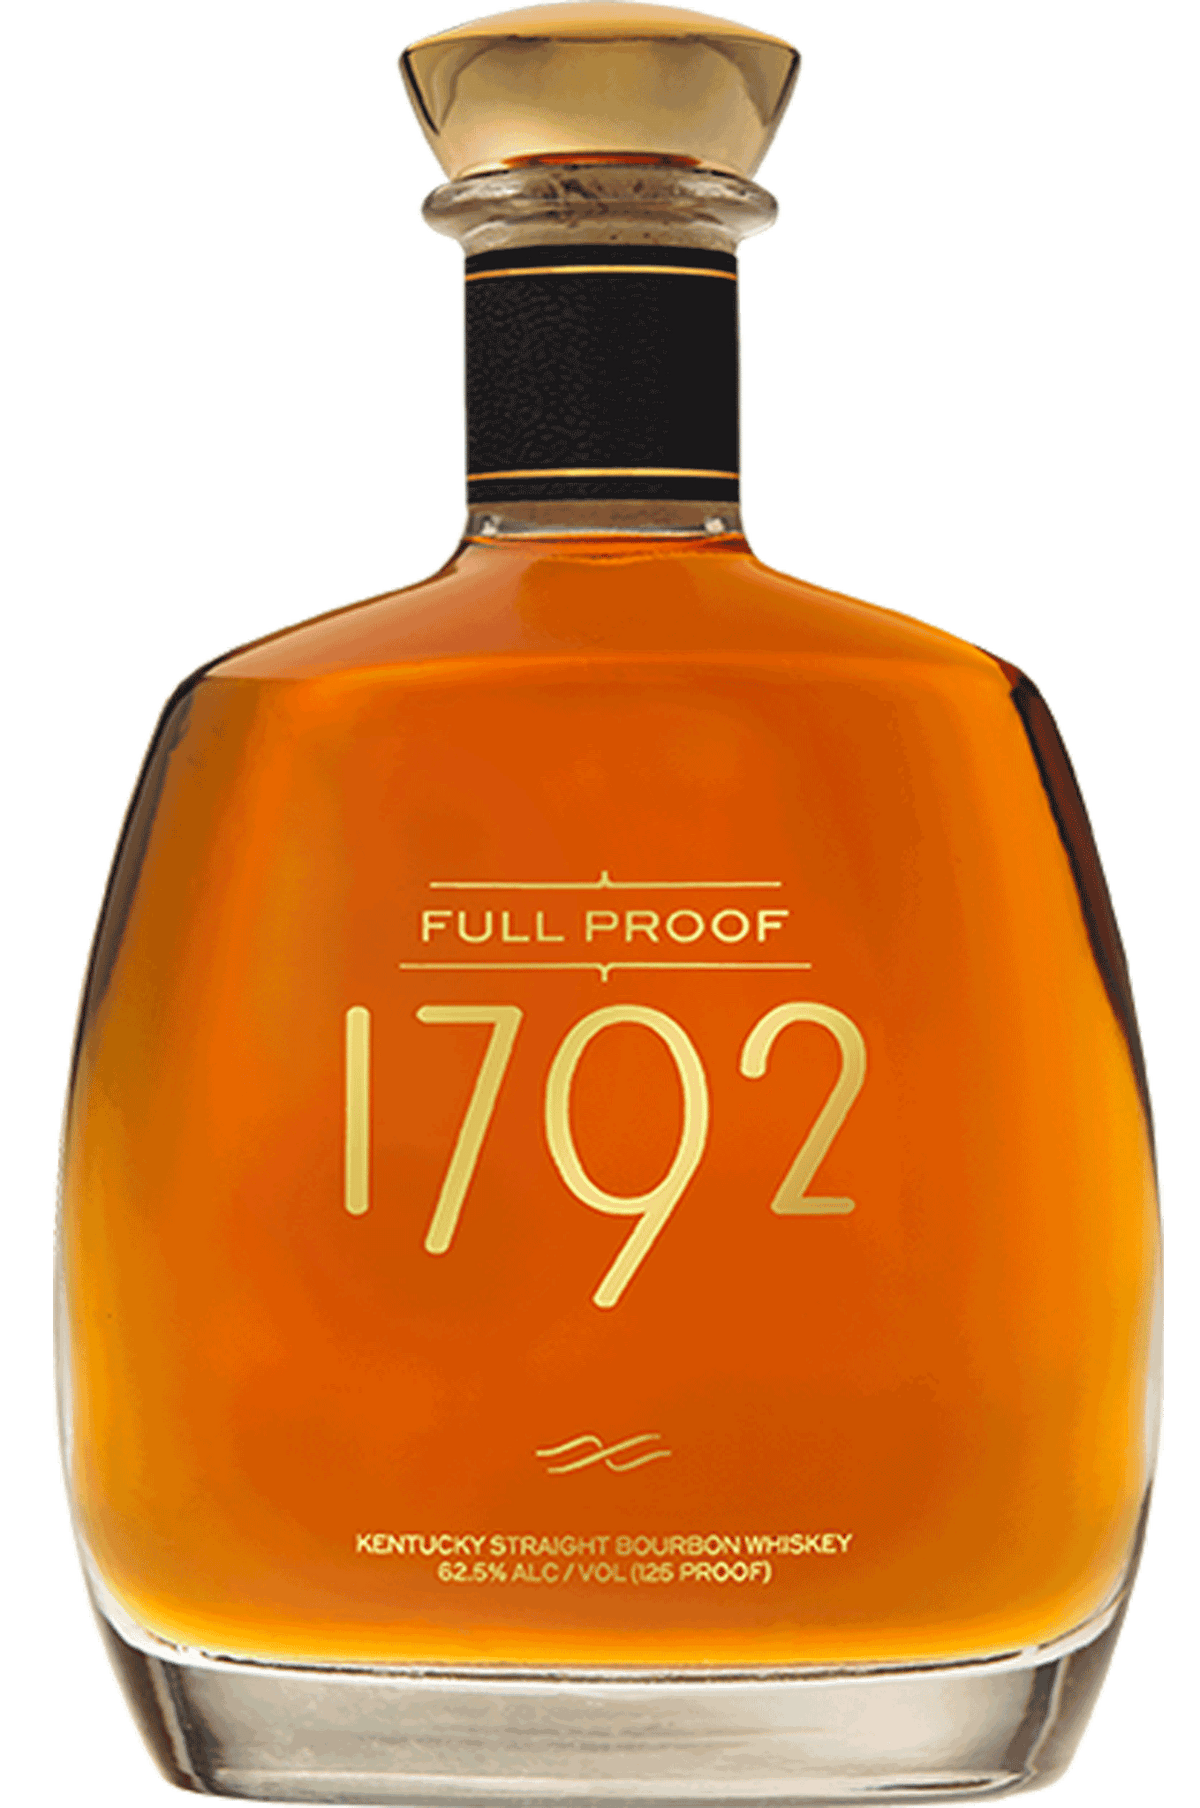 1792-whiskey-full-proof